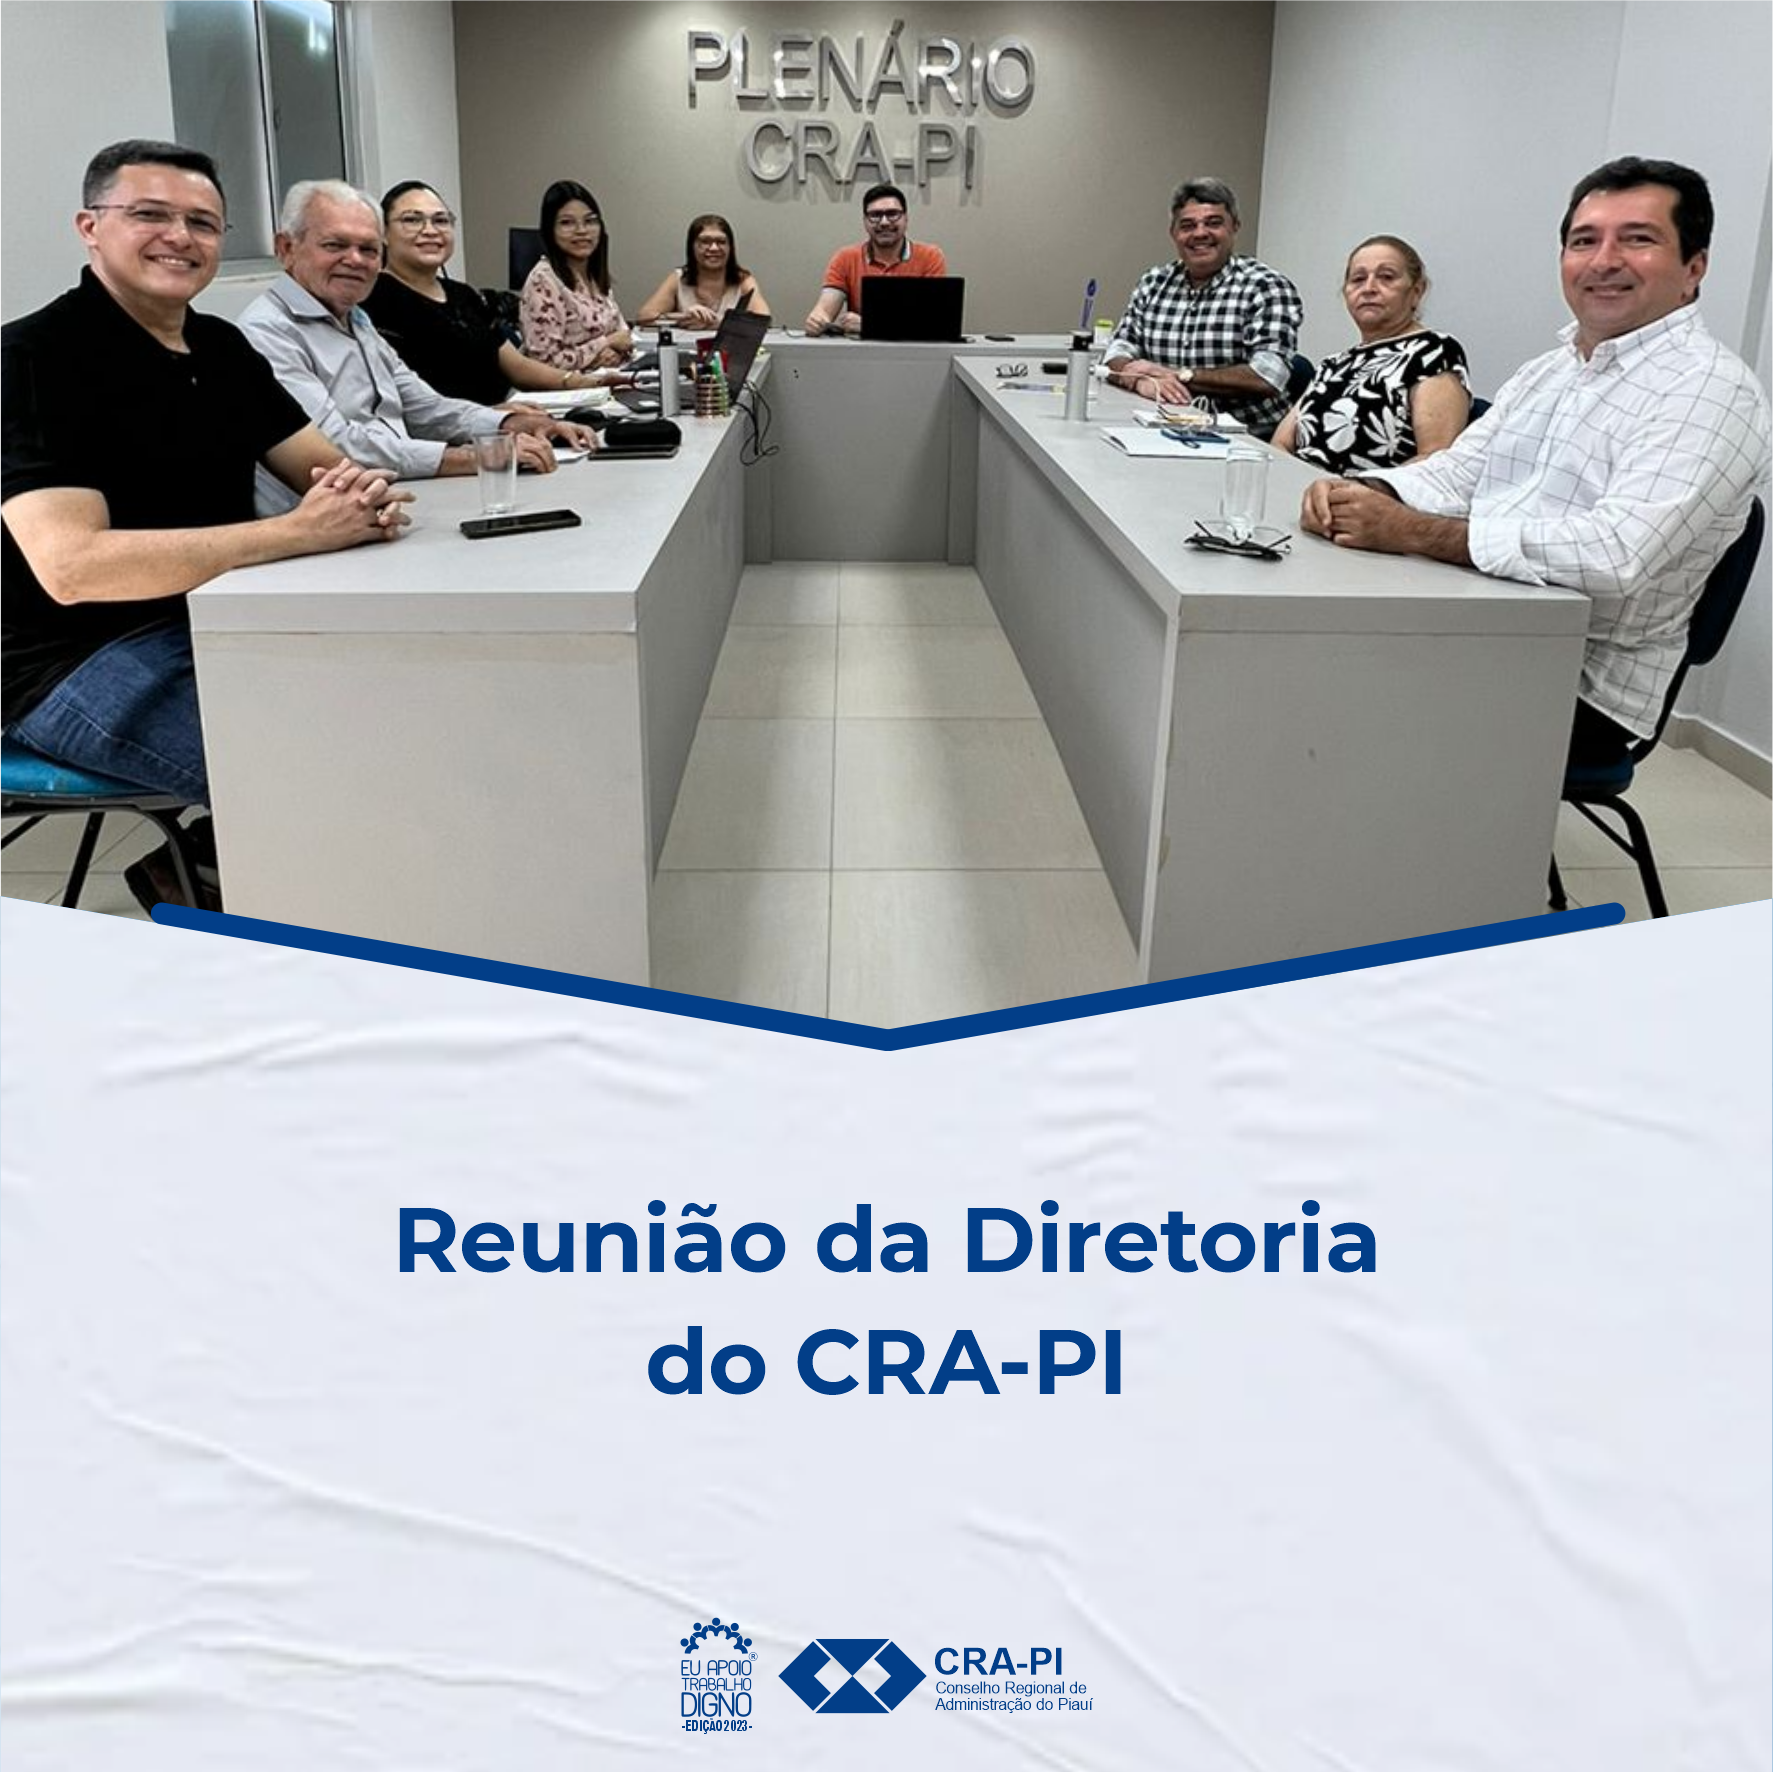 Reunião da Diretoria do CRA-PI